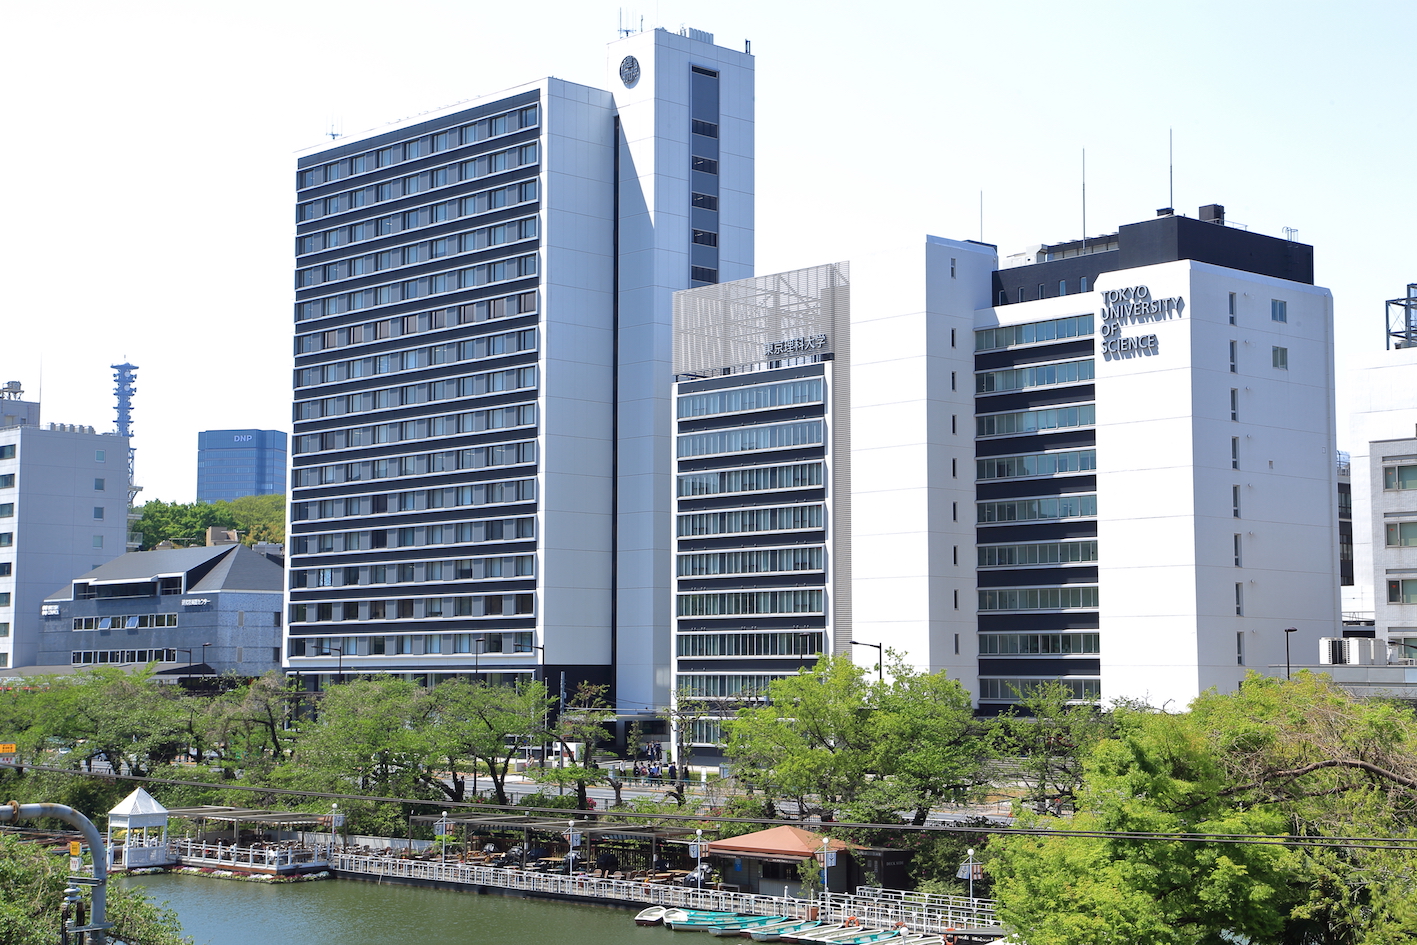 東京理科大学対策 入試科目の配点や受かるための勉強法は 公式 アクシブアカデミー 大学受験の1 1個別予備校